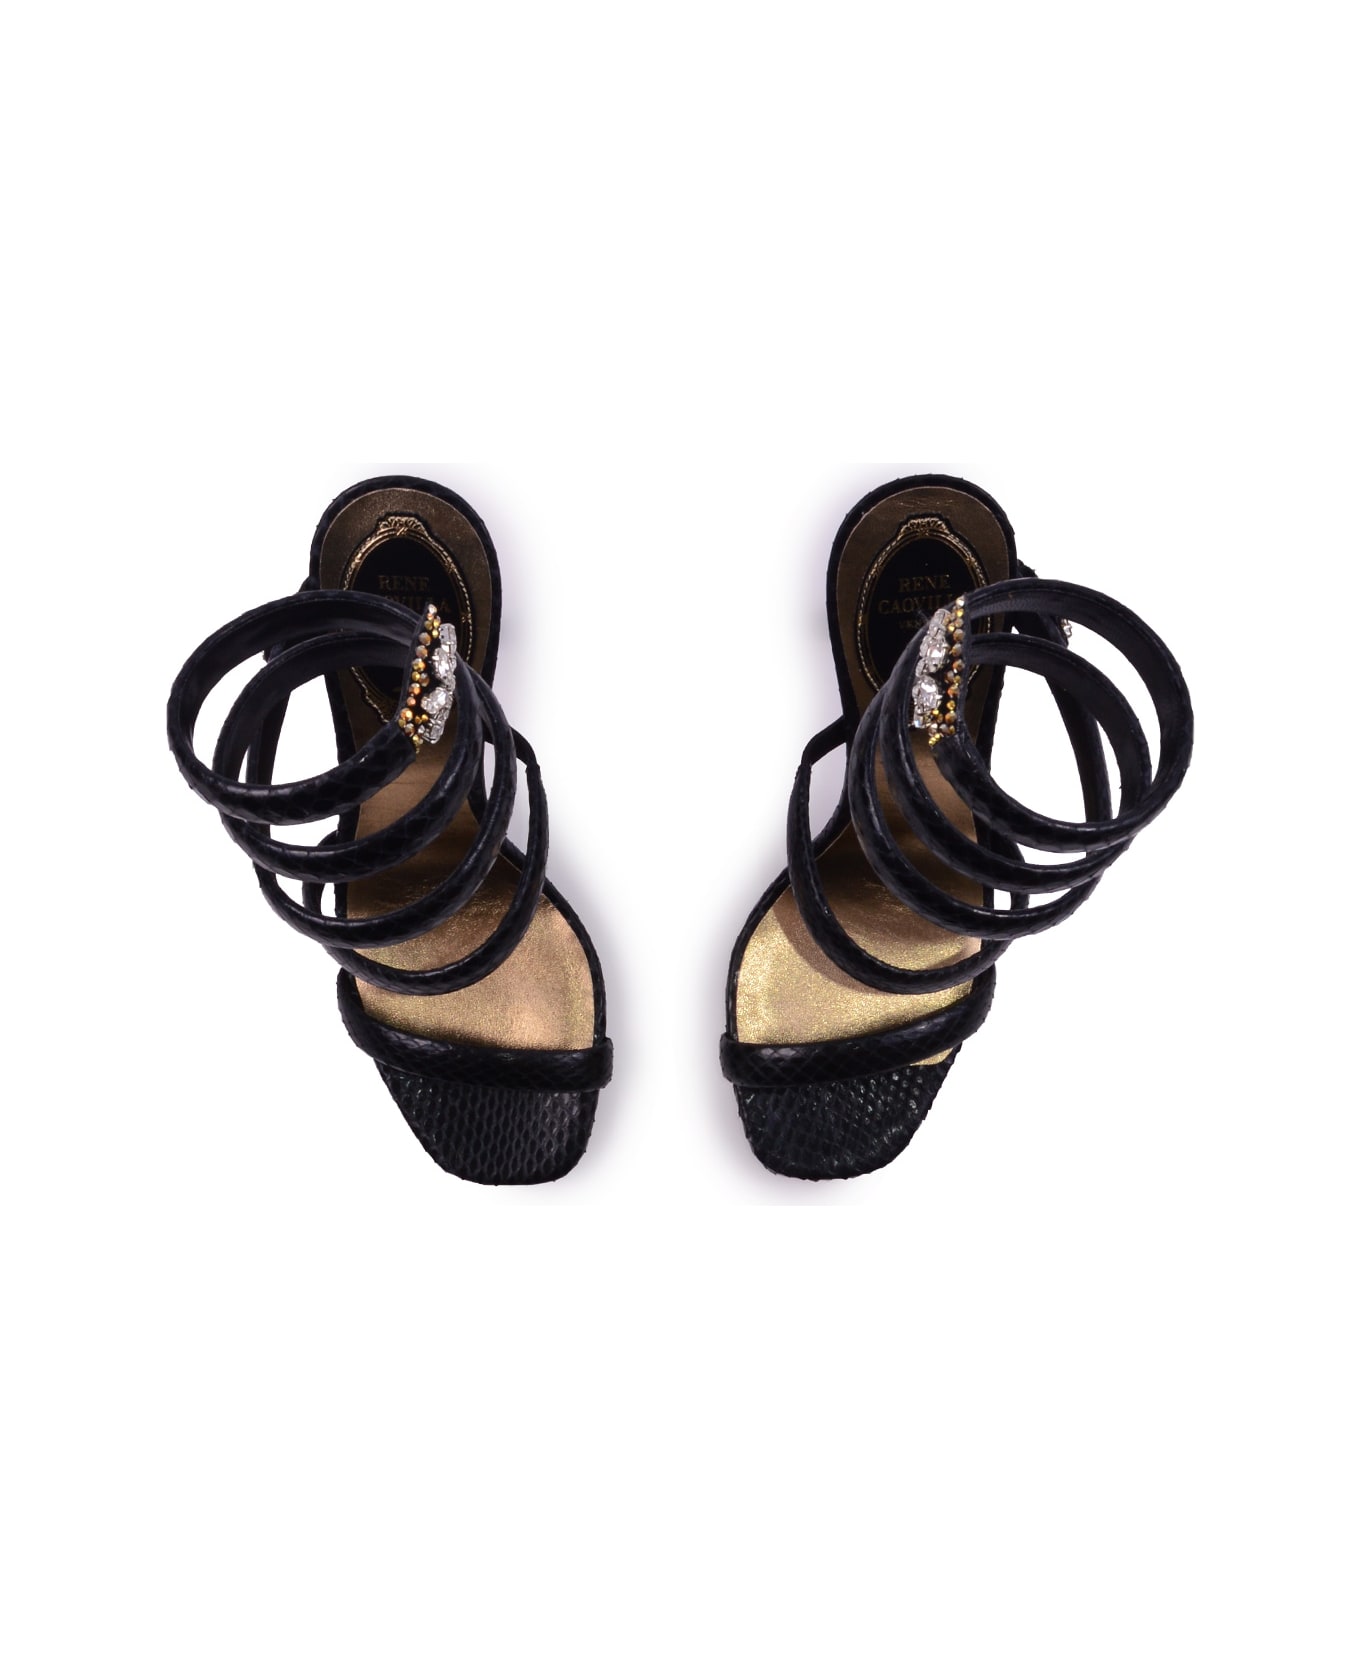 René Caovilla Heel Sandals - Black